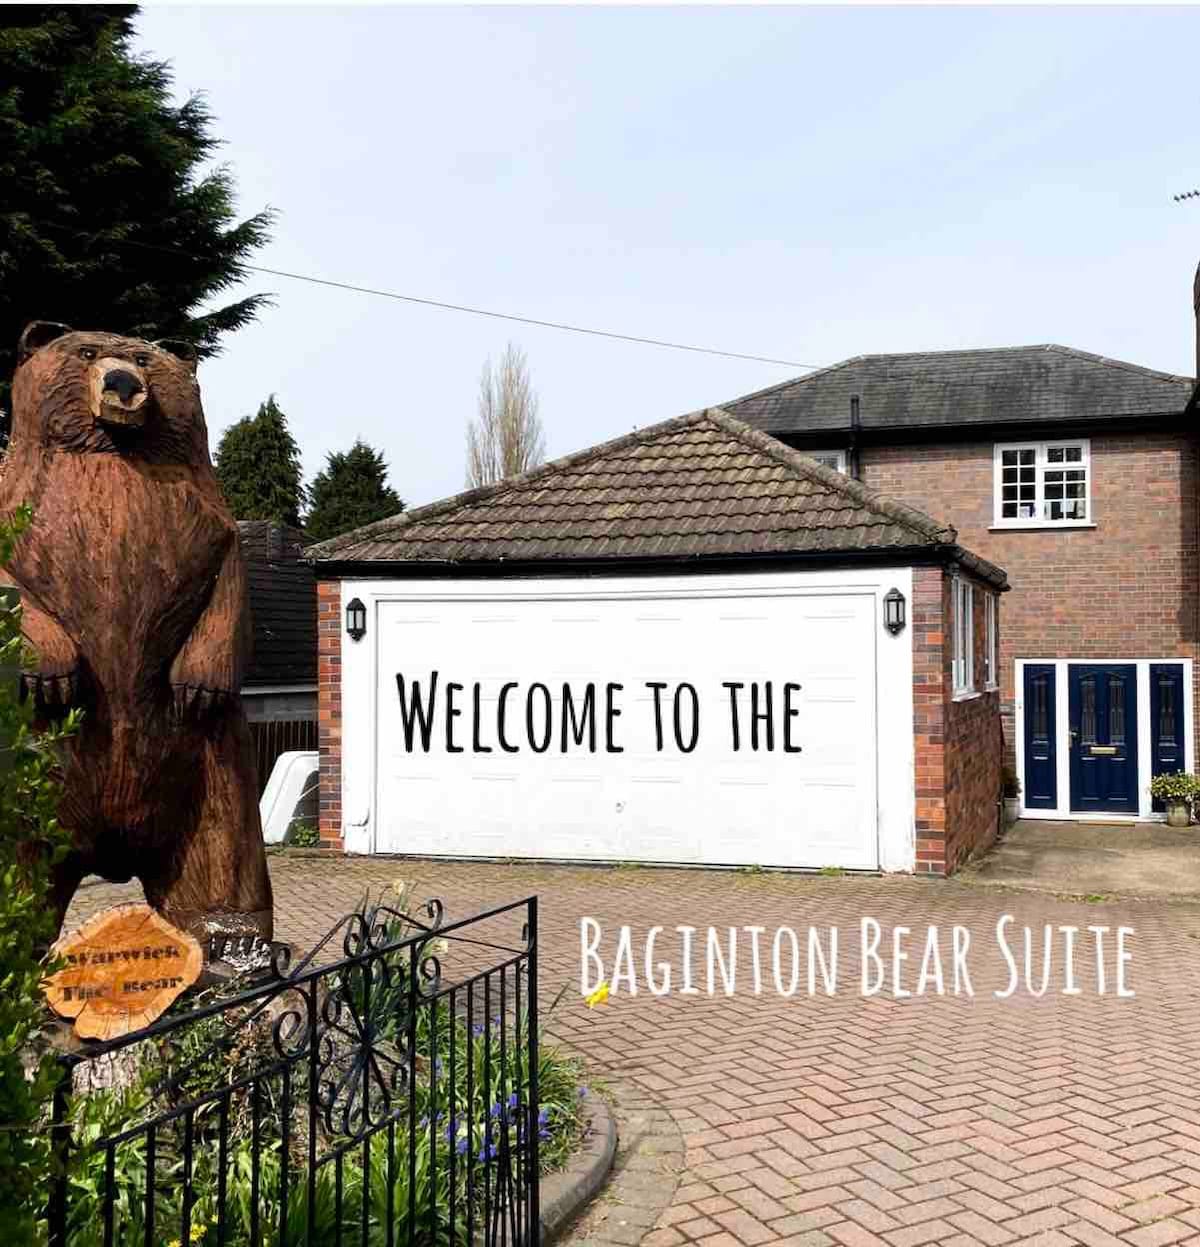 The Baginton Bear Suite